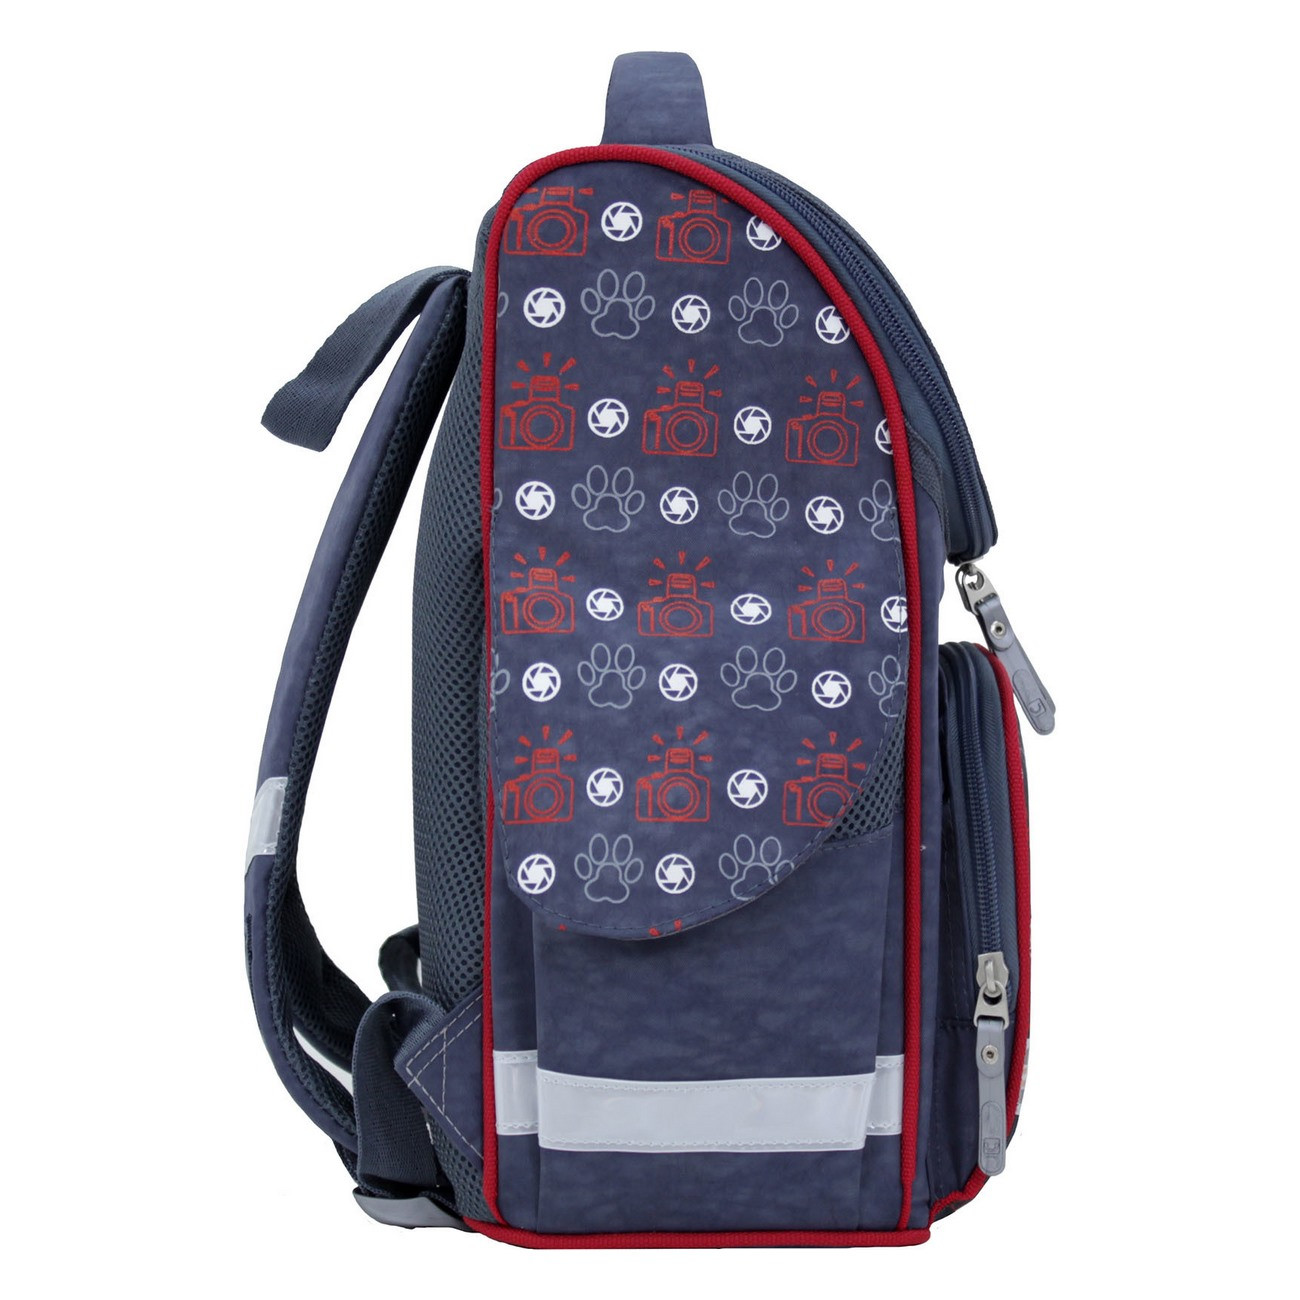 Рюкзак, ранец или портфель для первоклассника — что лучше?